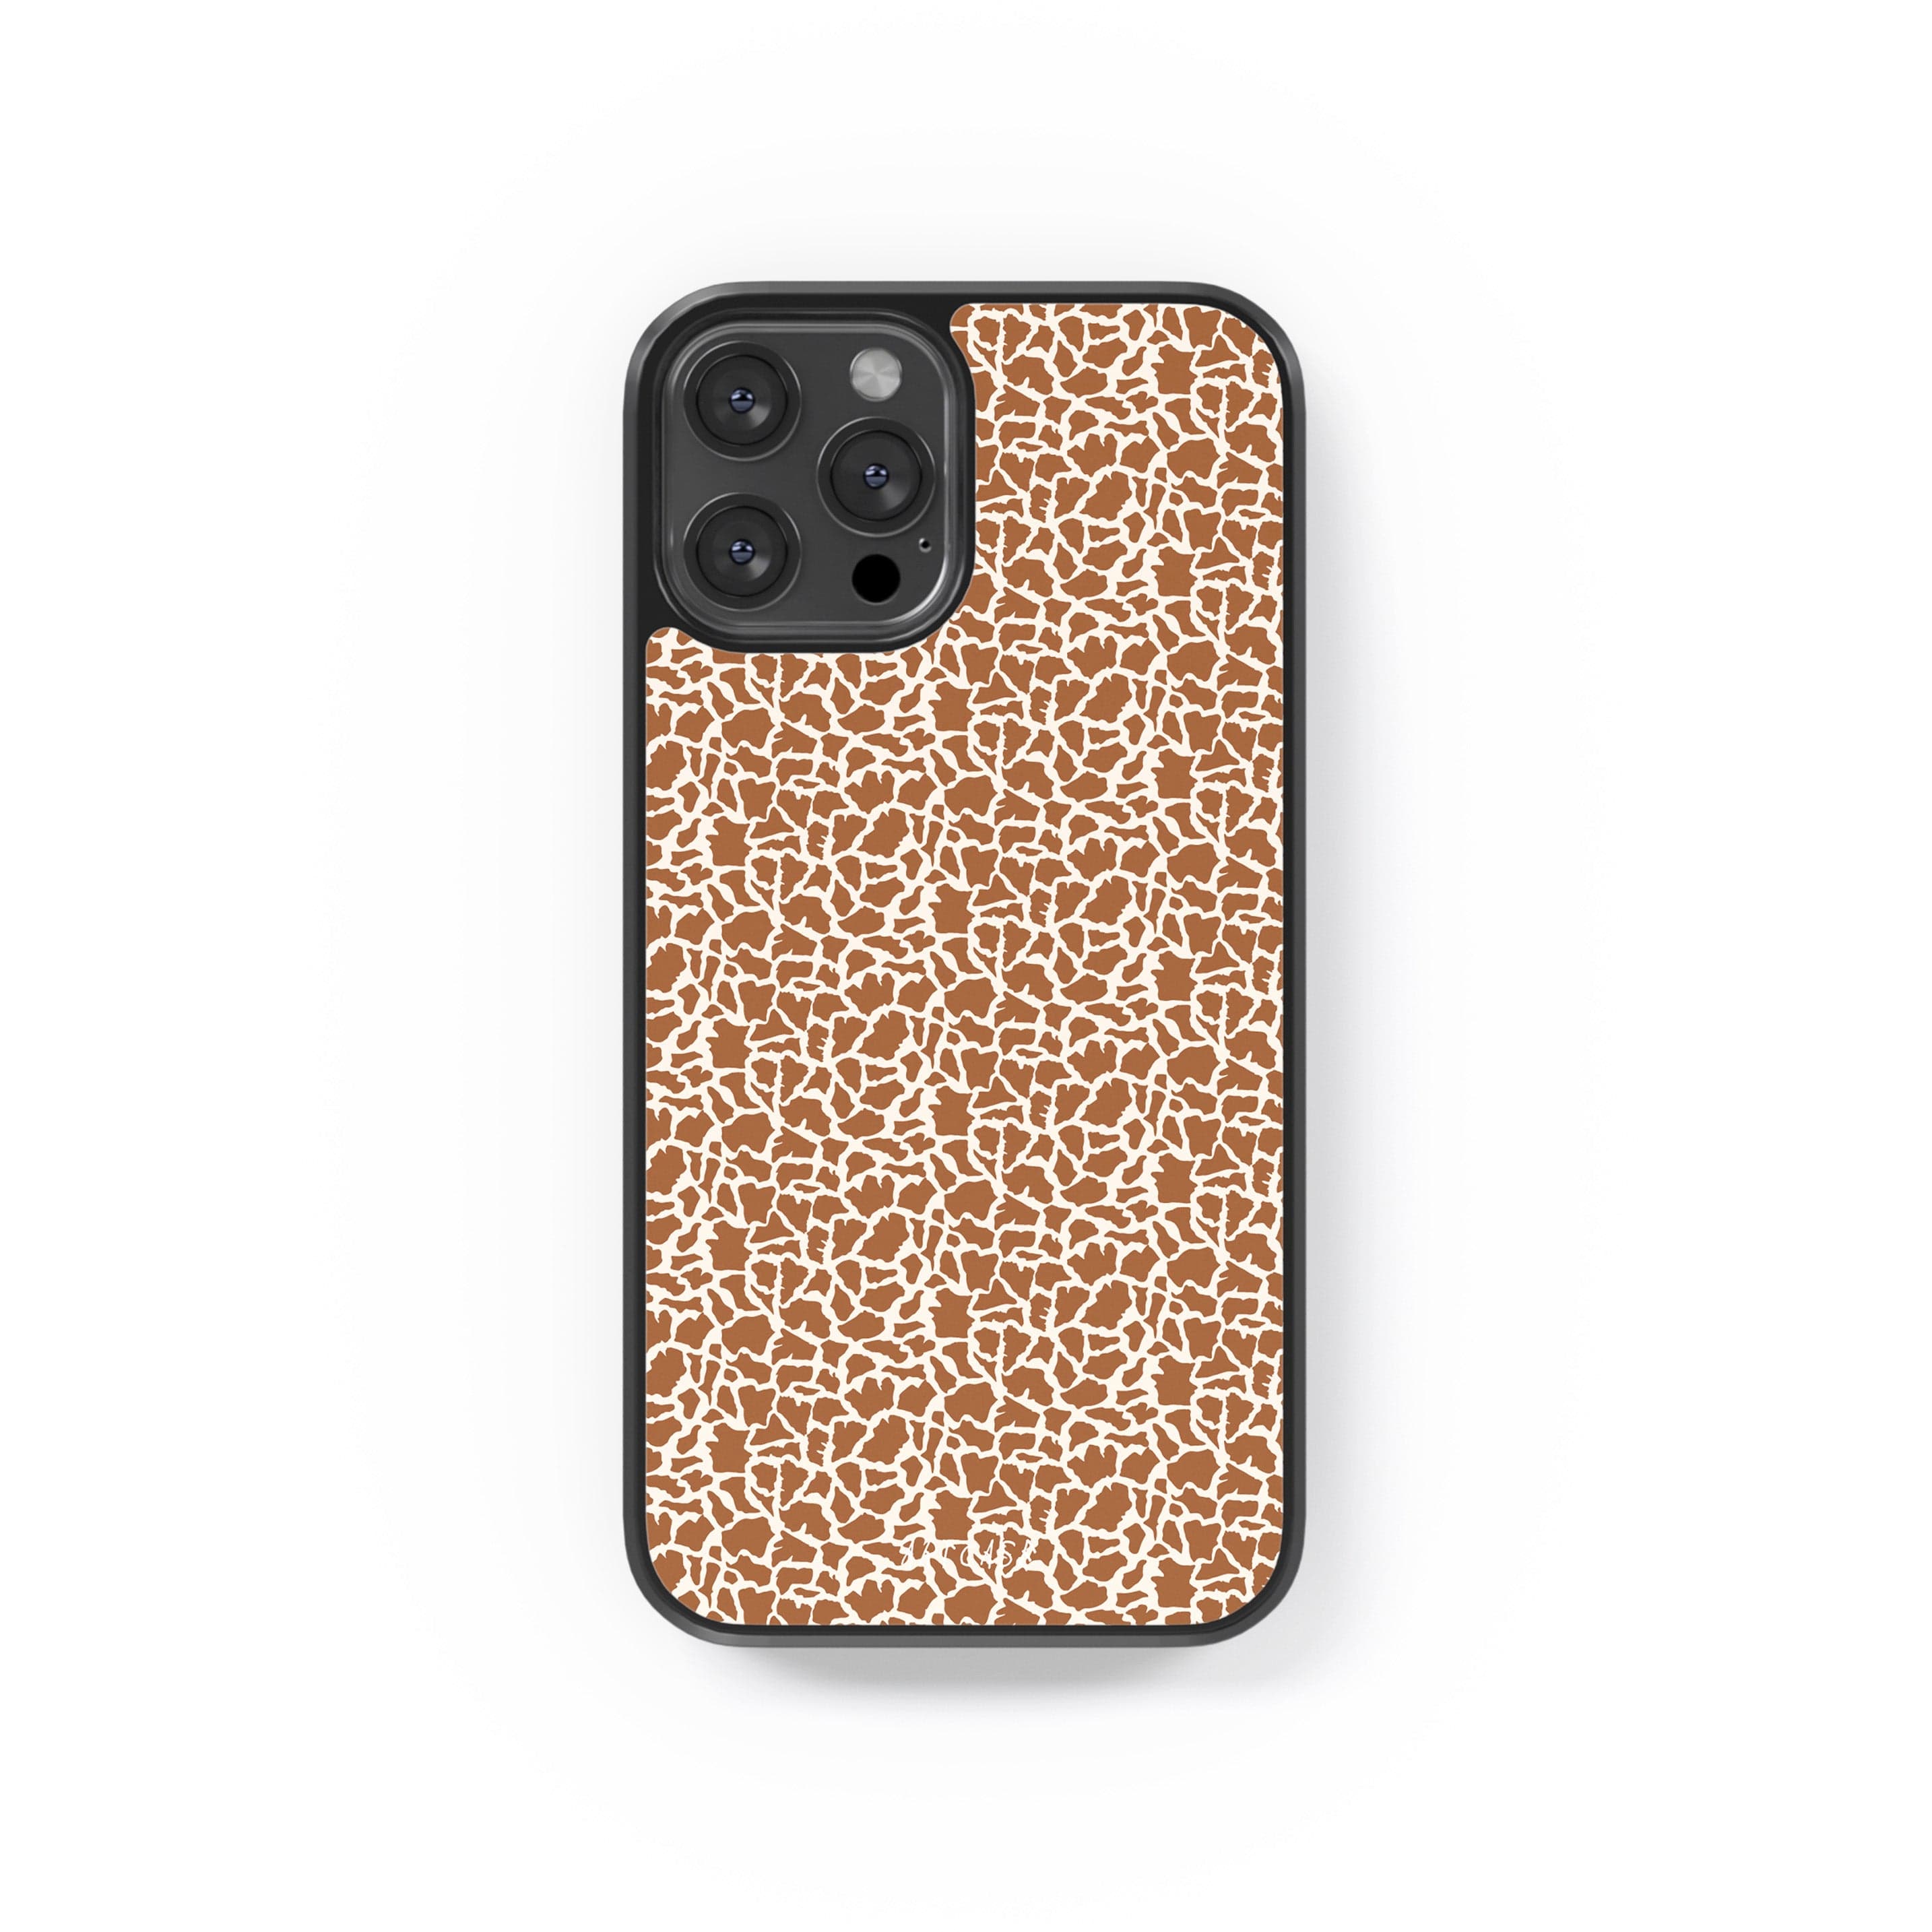 Phone case "Giraffe"